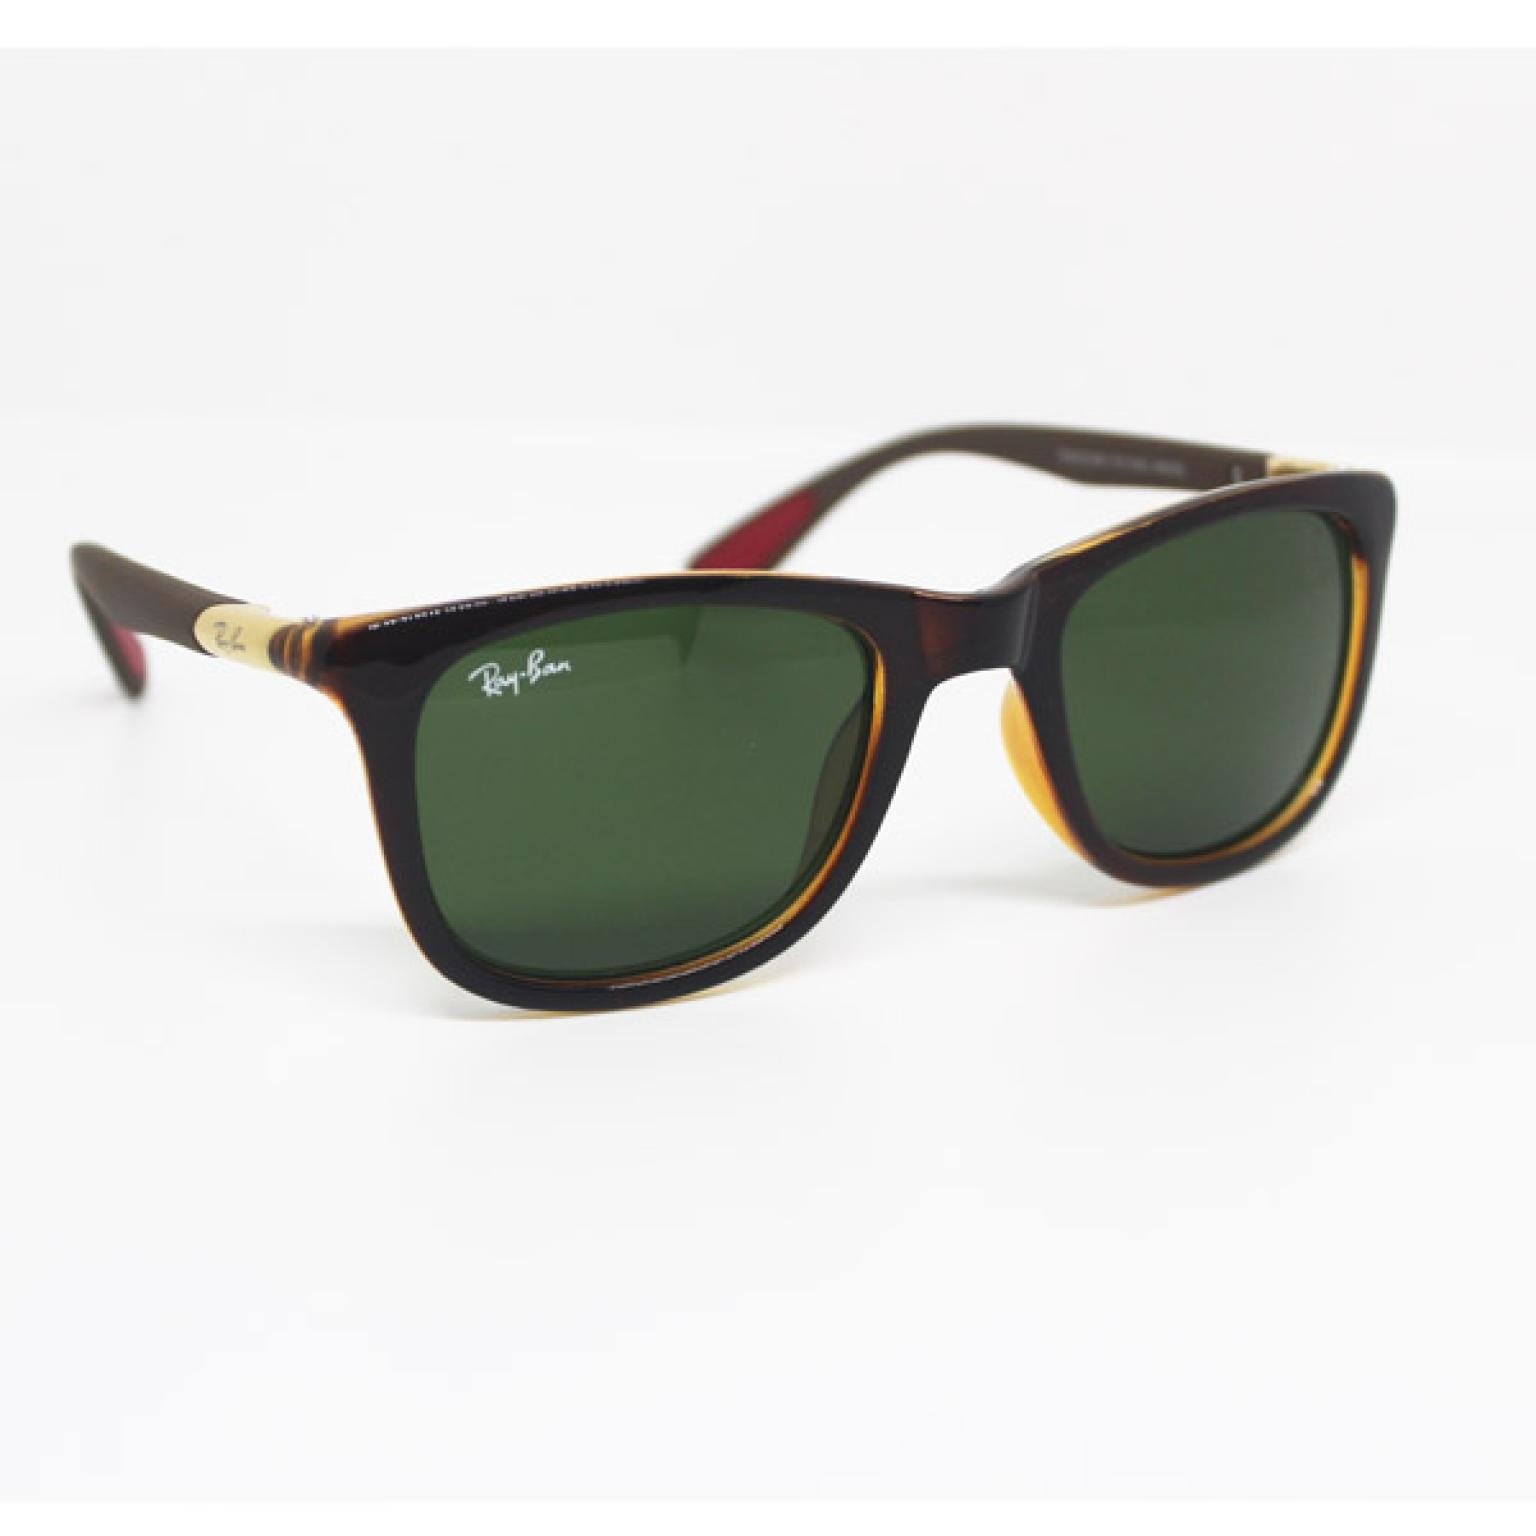 Wayfarer Style Brown Premium Quality Sunglass With Glass Lens For Men UV400 |SGM-84|